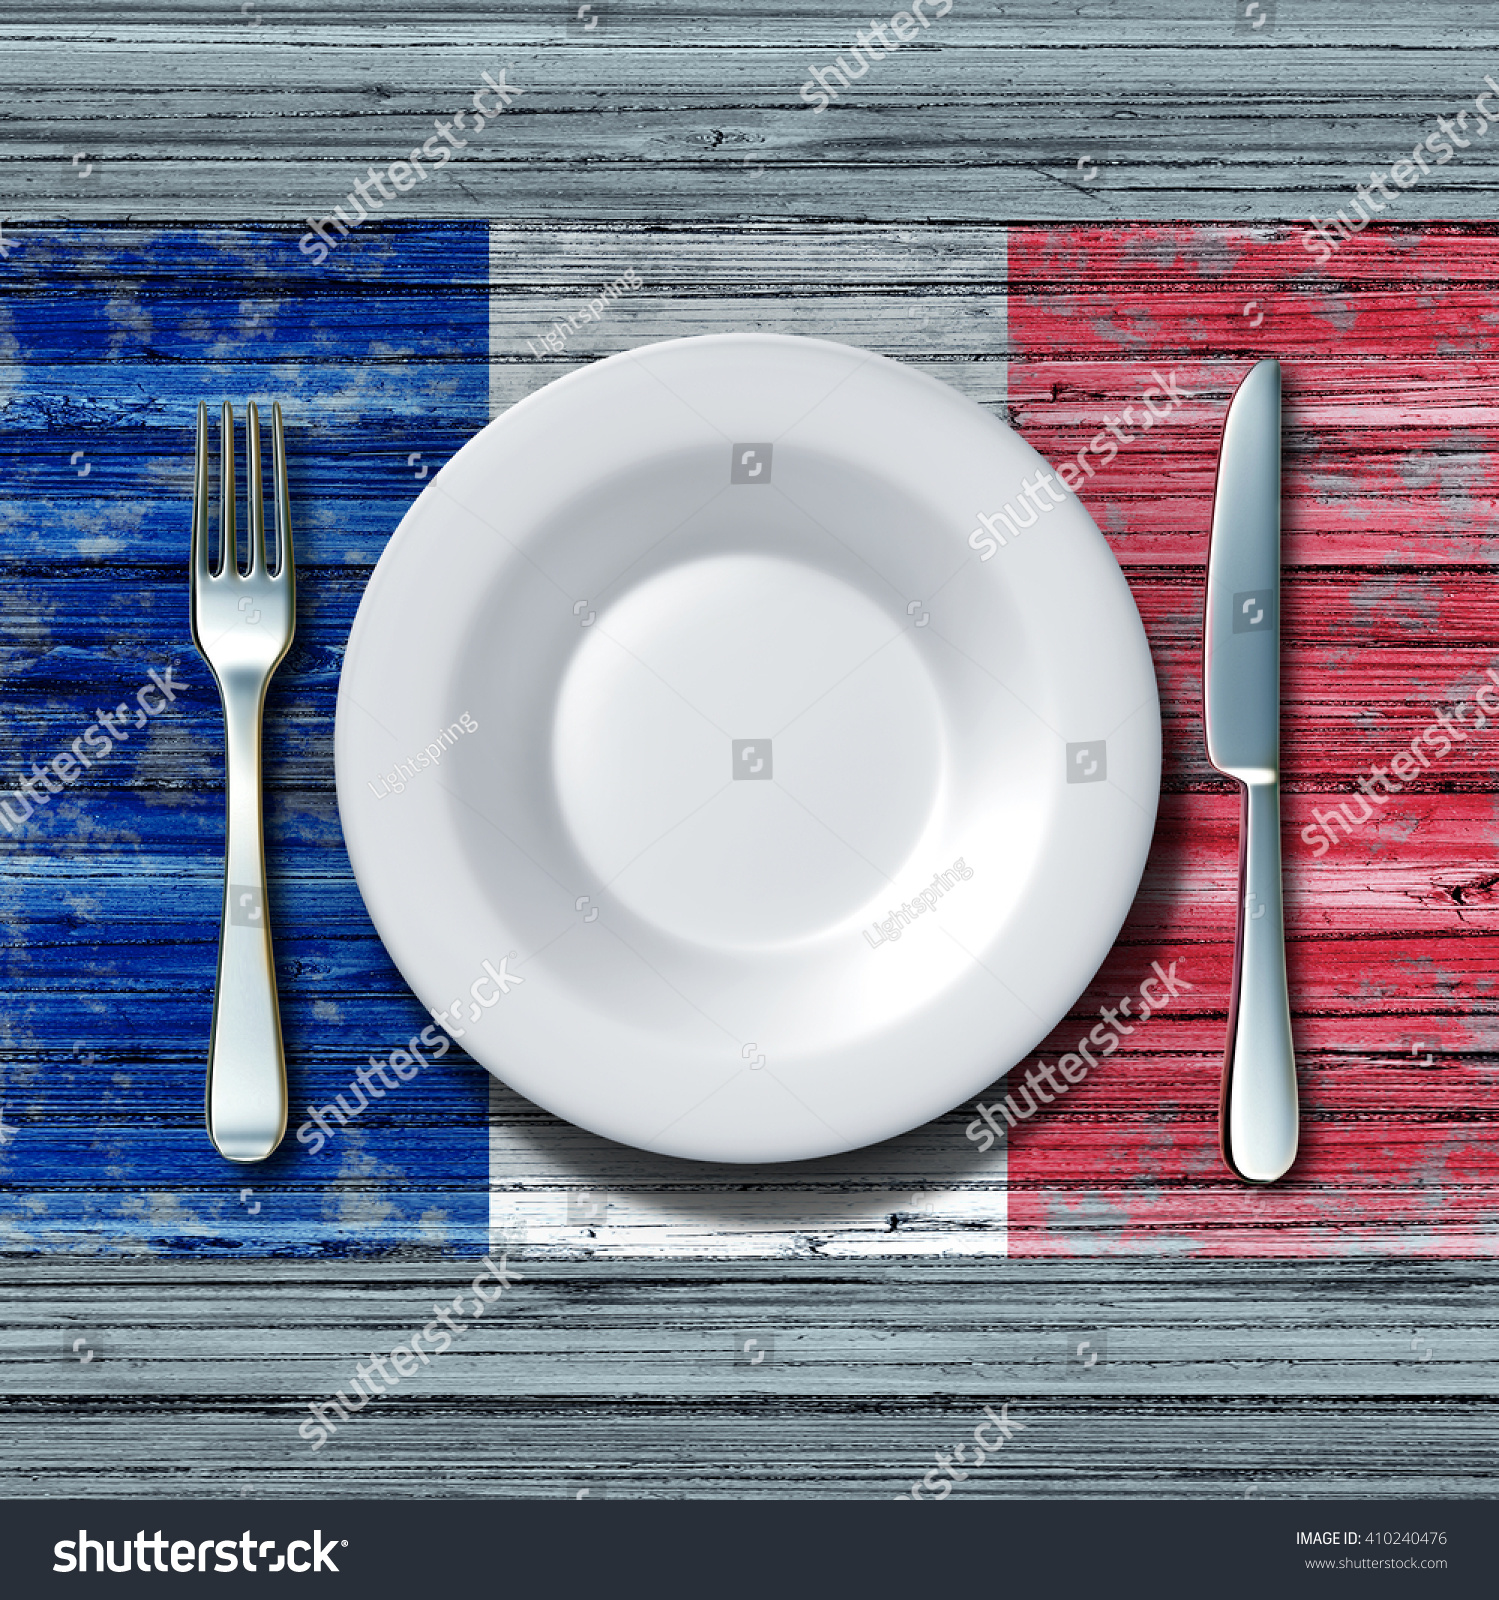 古い田舎の木のテーブルにナイフとフォークを置き 3dイラスト を使ったパリの伝統的な食べ物のアイコンとしてフランスの国旗を付けたフランス料理の食べ物のコンセプト のイラスト素材